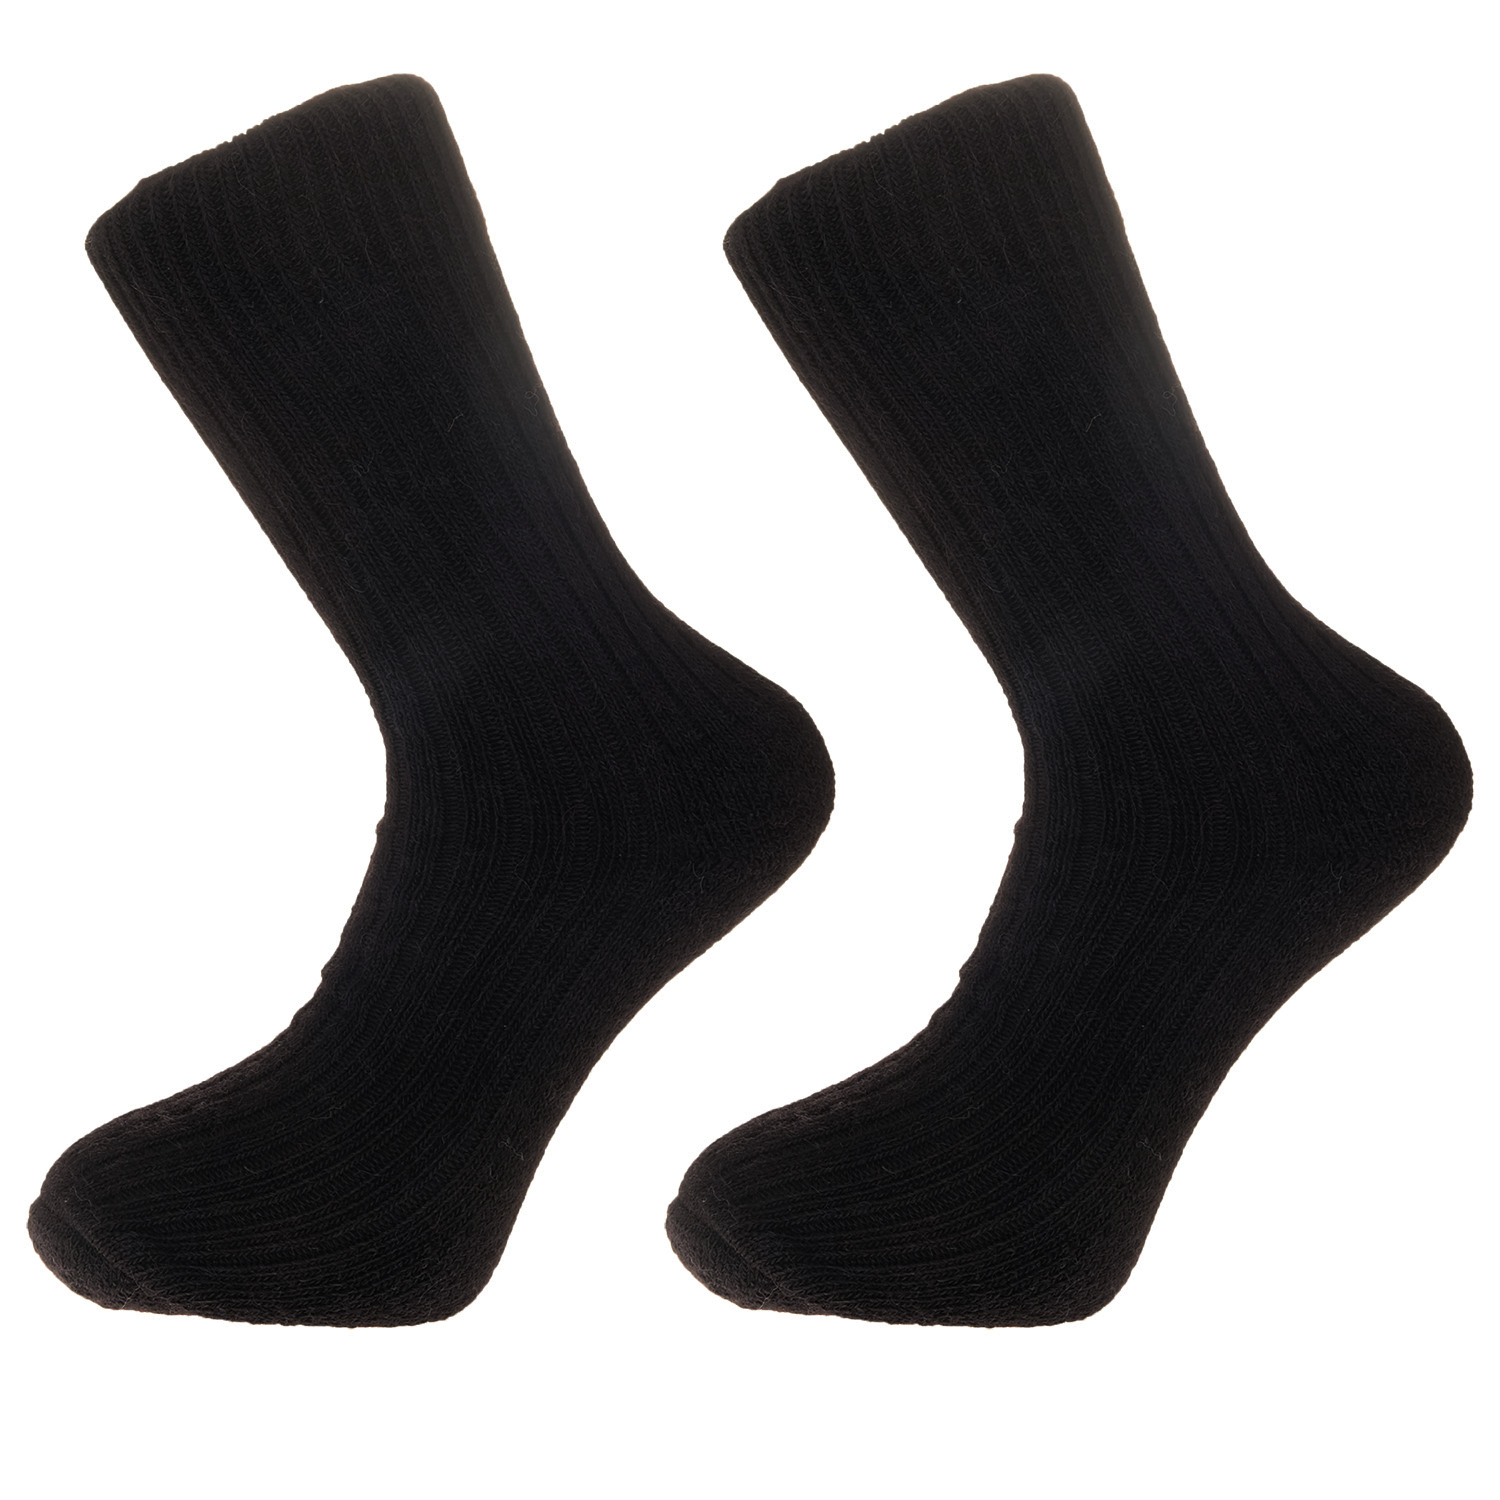 Alpaca walking socks, 75% Alpaca wool. Thick socks with a